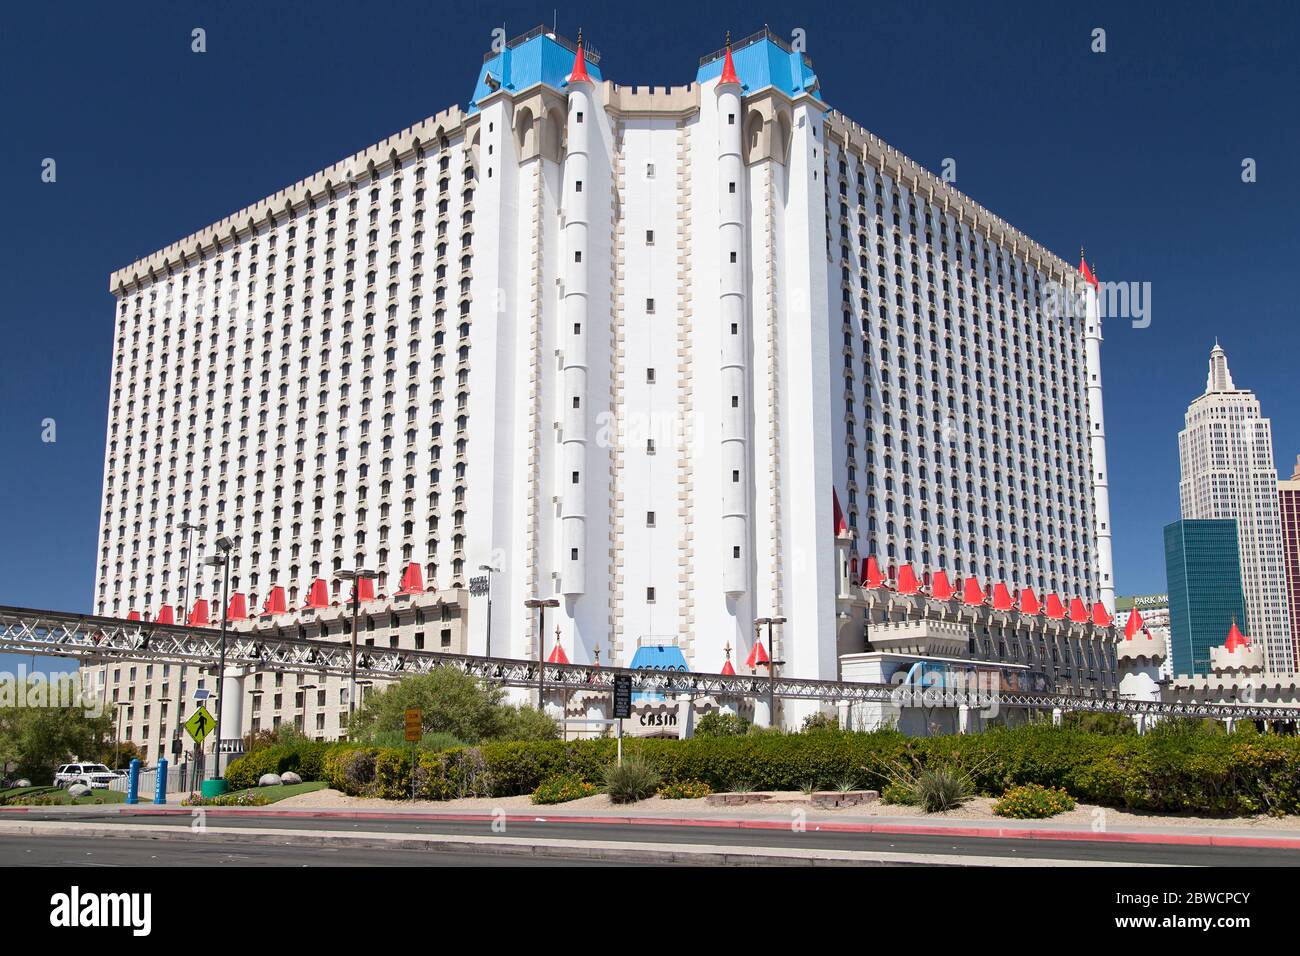 Las Vegas, Nevada - August 30, 2019: Excalibur Hotel and Casino in Las Vegas, Nevada, United States. Stock Photo